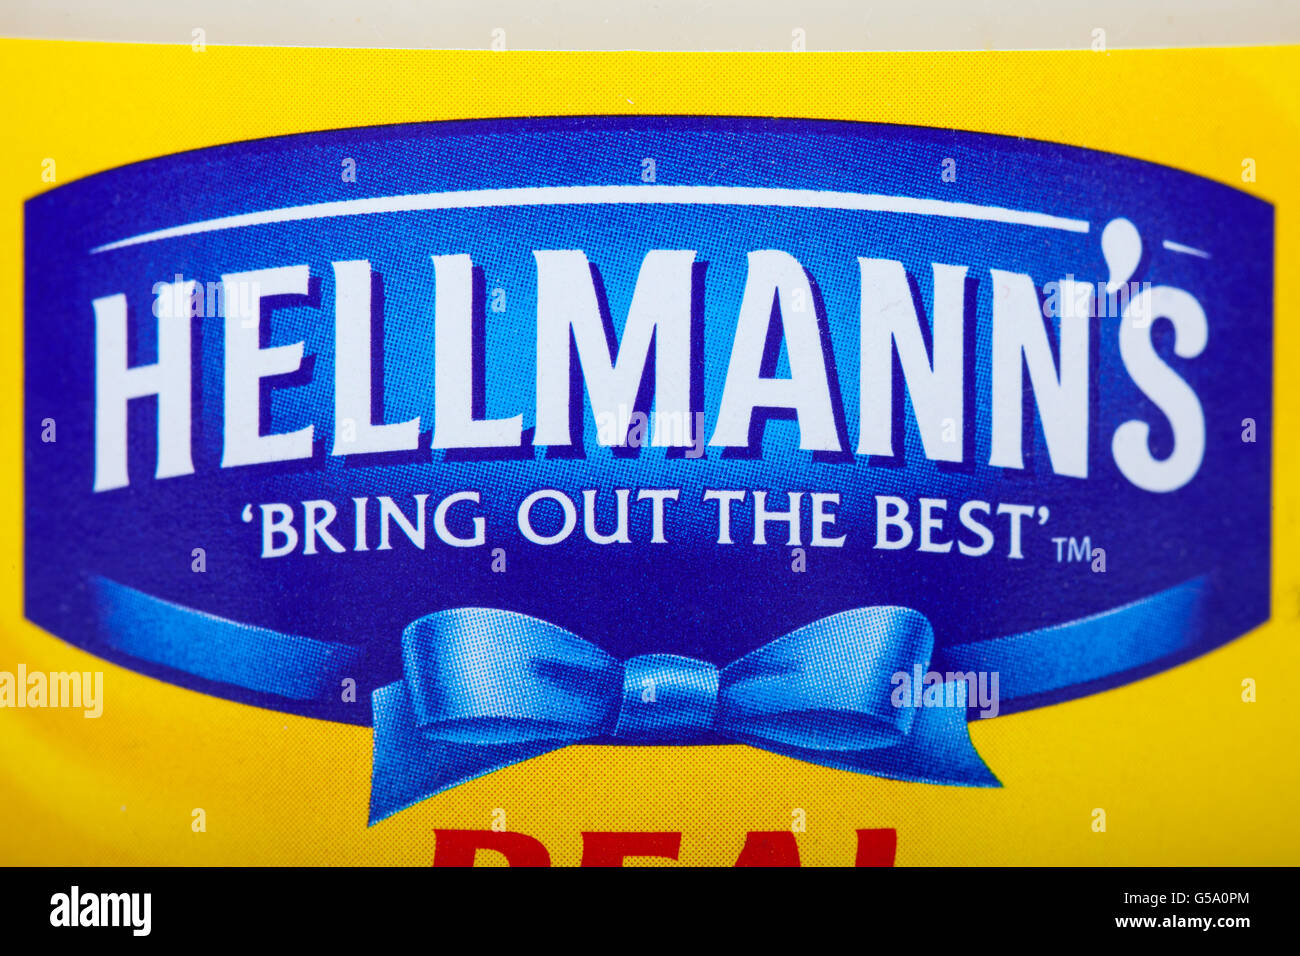 Londres, Royaume-Uni - 16 juin 2016 : un gros plan sur le logo et slogan de la marque Hellmanns, le 16 juin 2016. Tionne également Hellmanns Banque D'Images